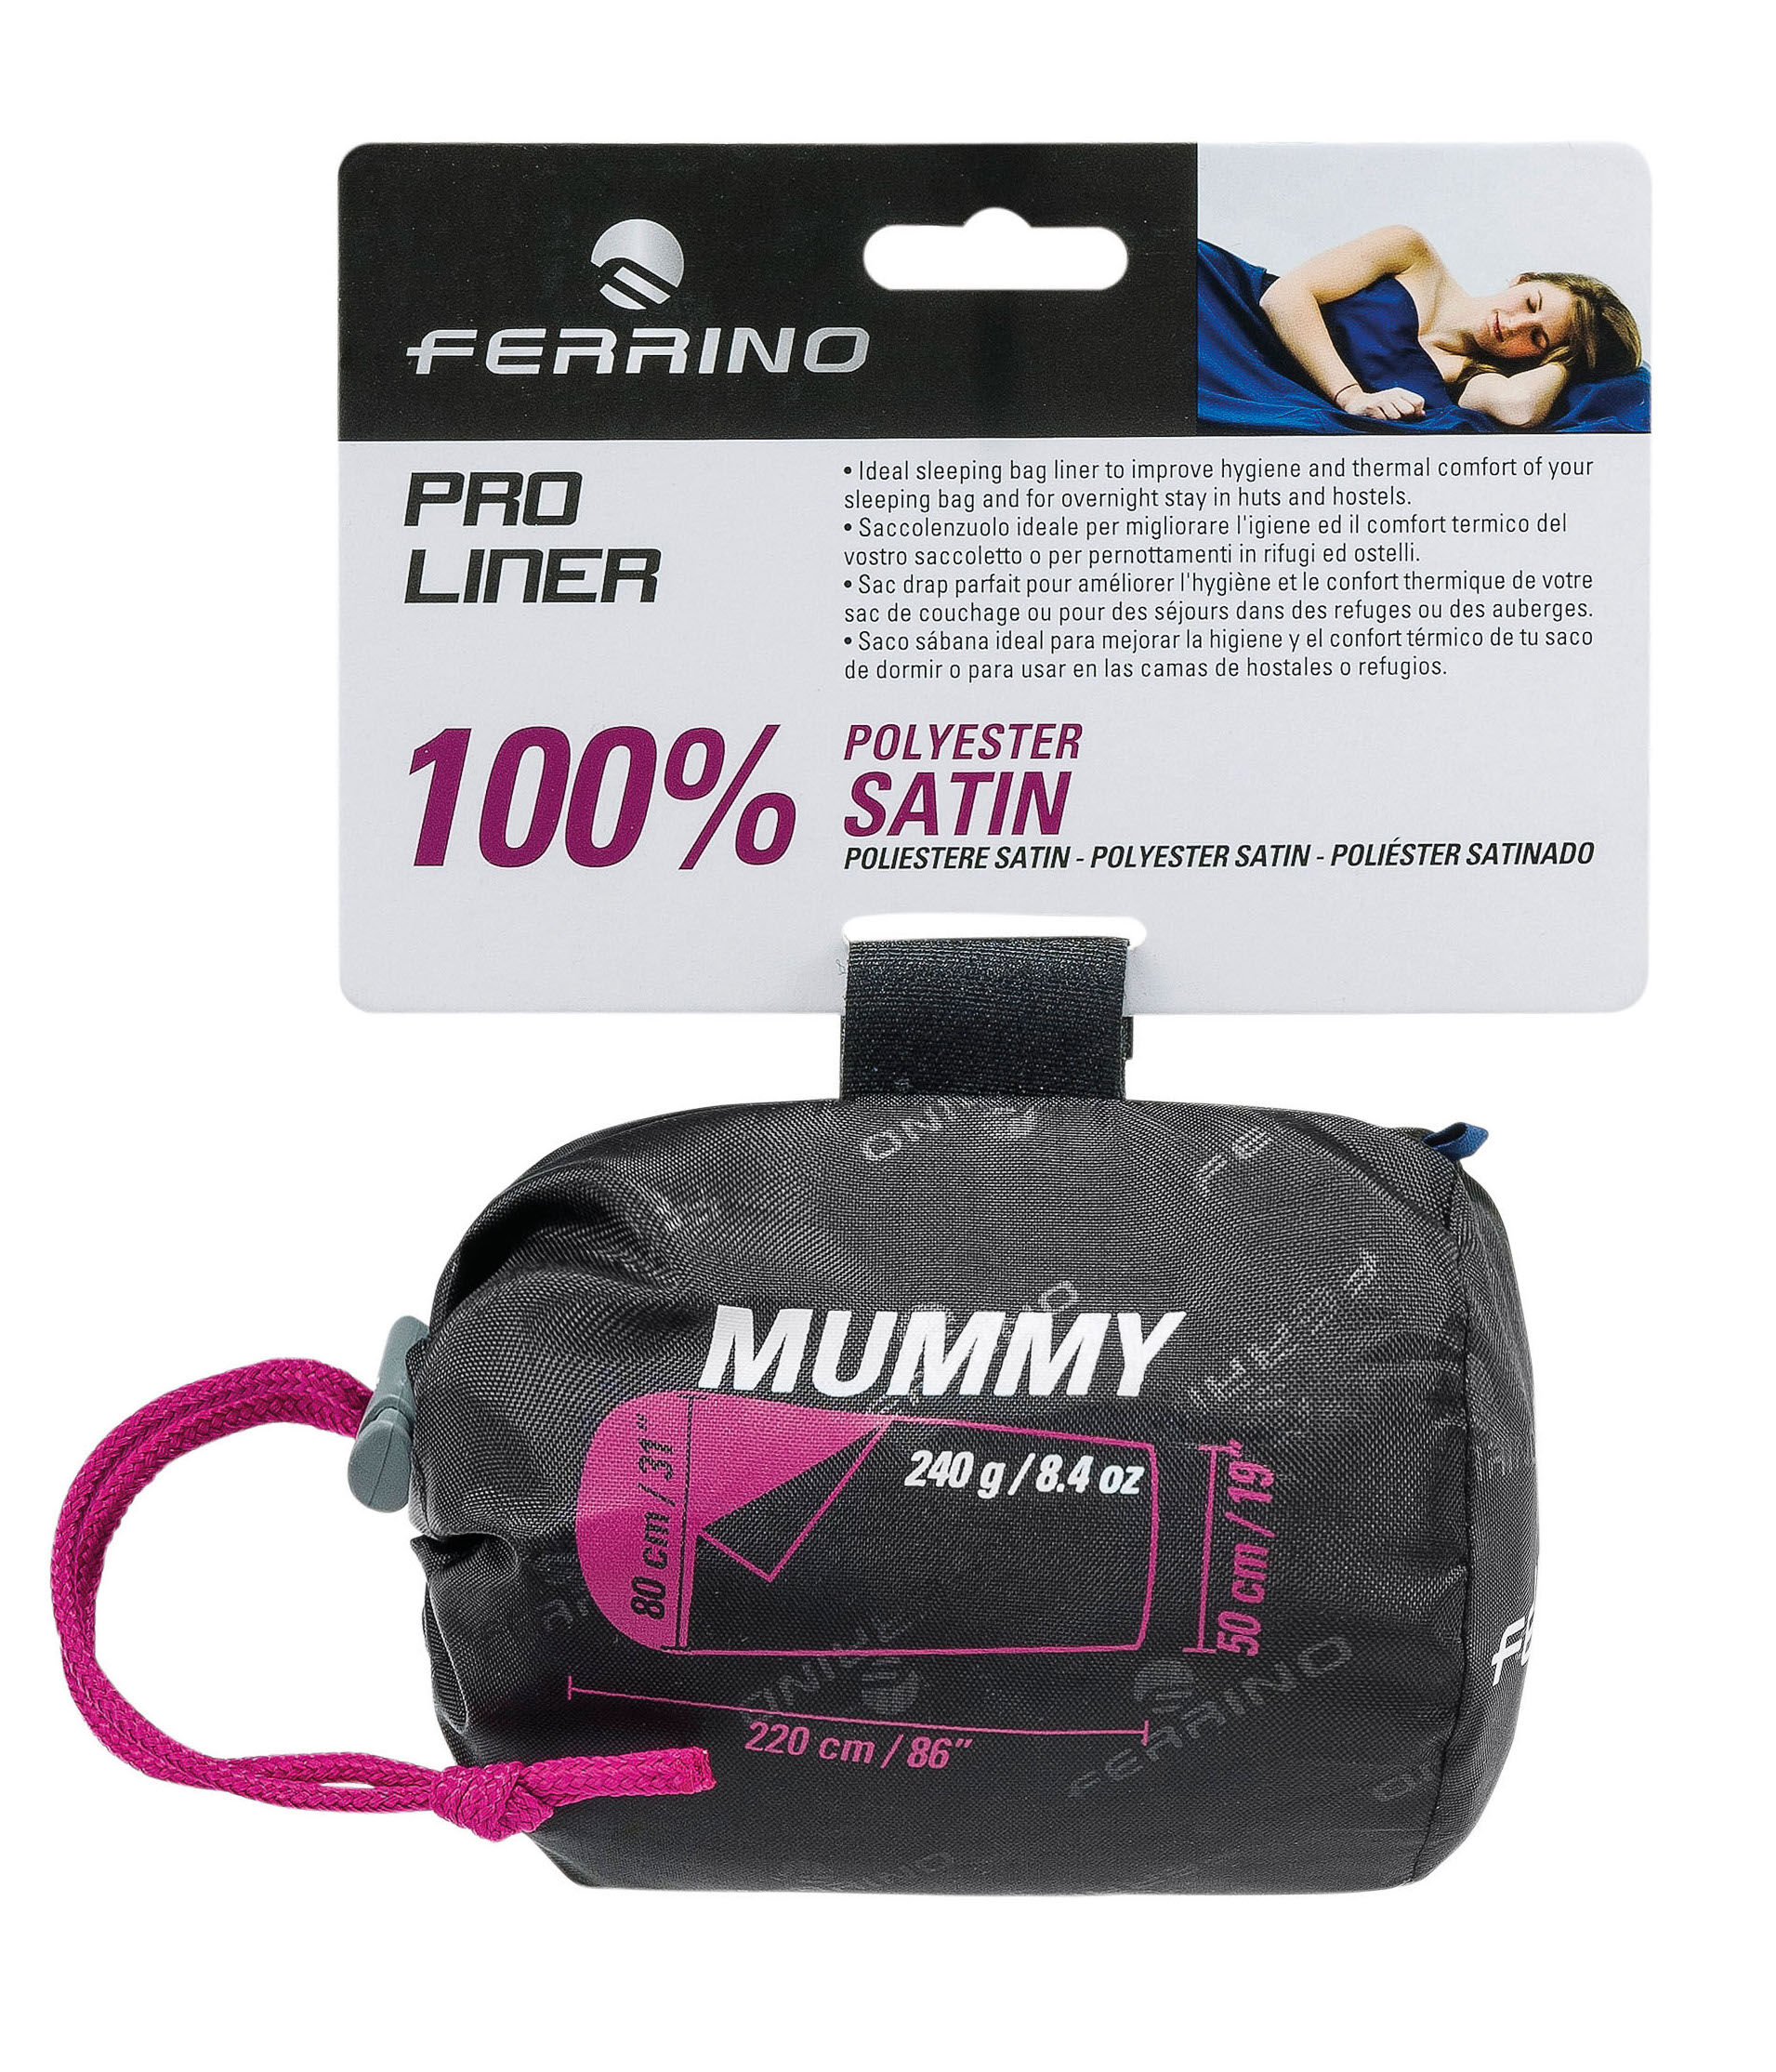 Ferrino - Pro Liner Mummy - Saco sabana